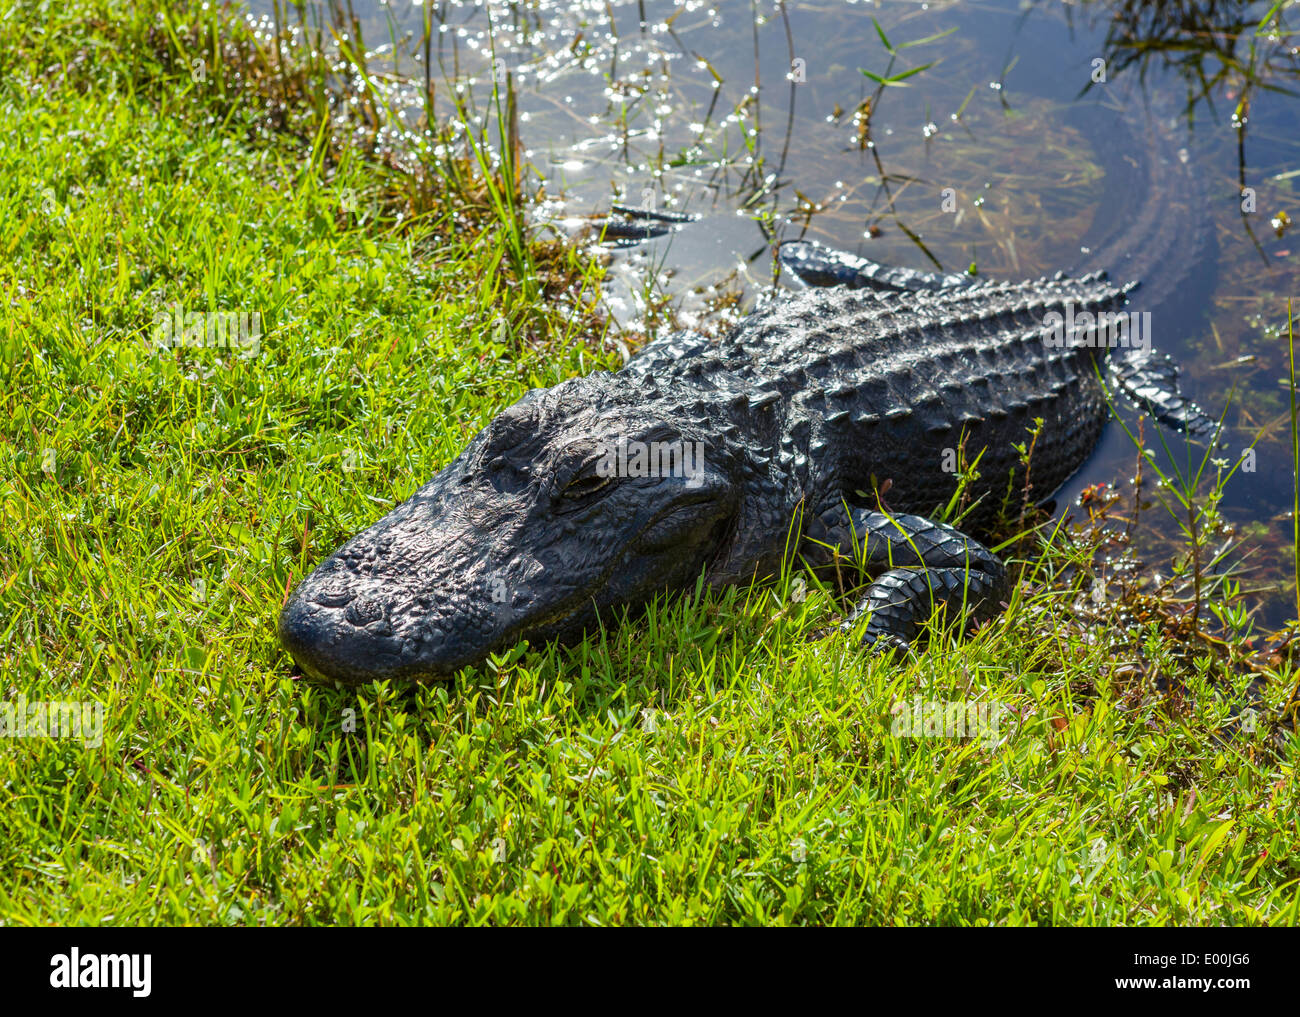 Les jeunes (Alligator mississippiensis) Alligator, par côté de Shark Valley loop road, le Parc National des Everglades, Florida, USA Banque D'Images